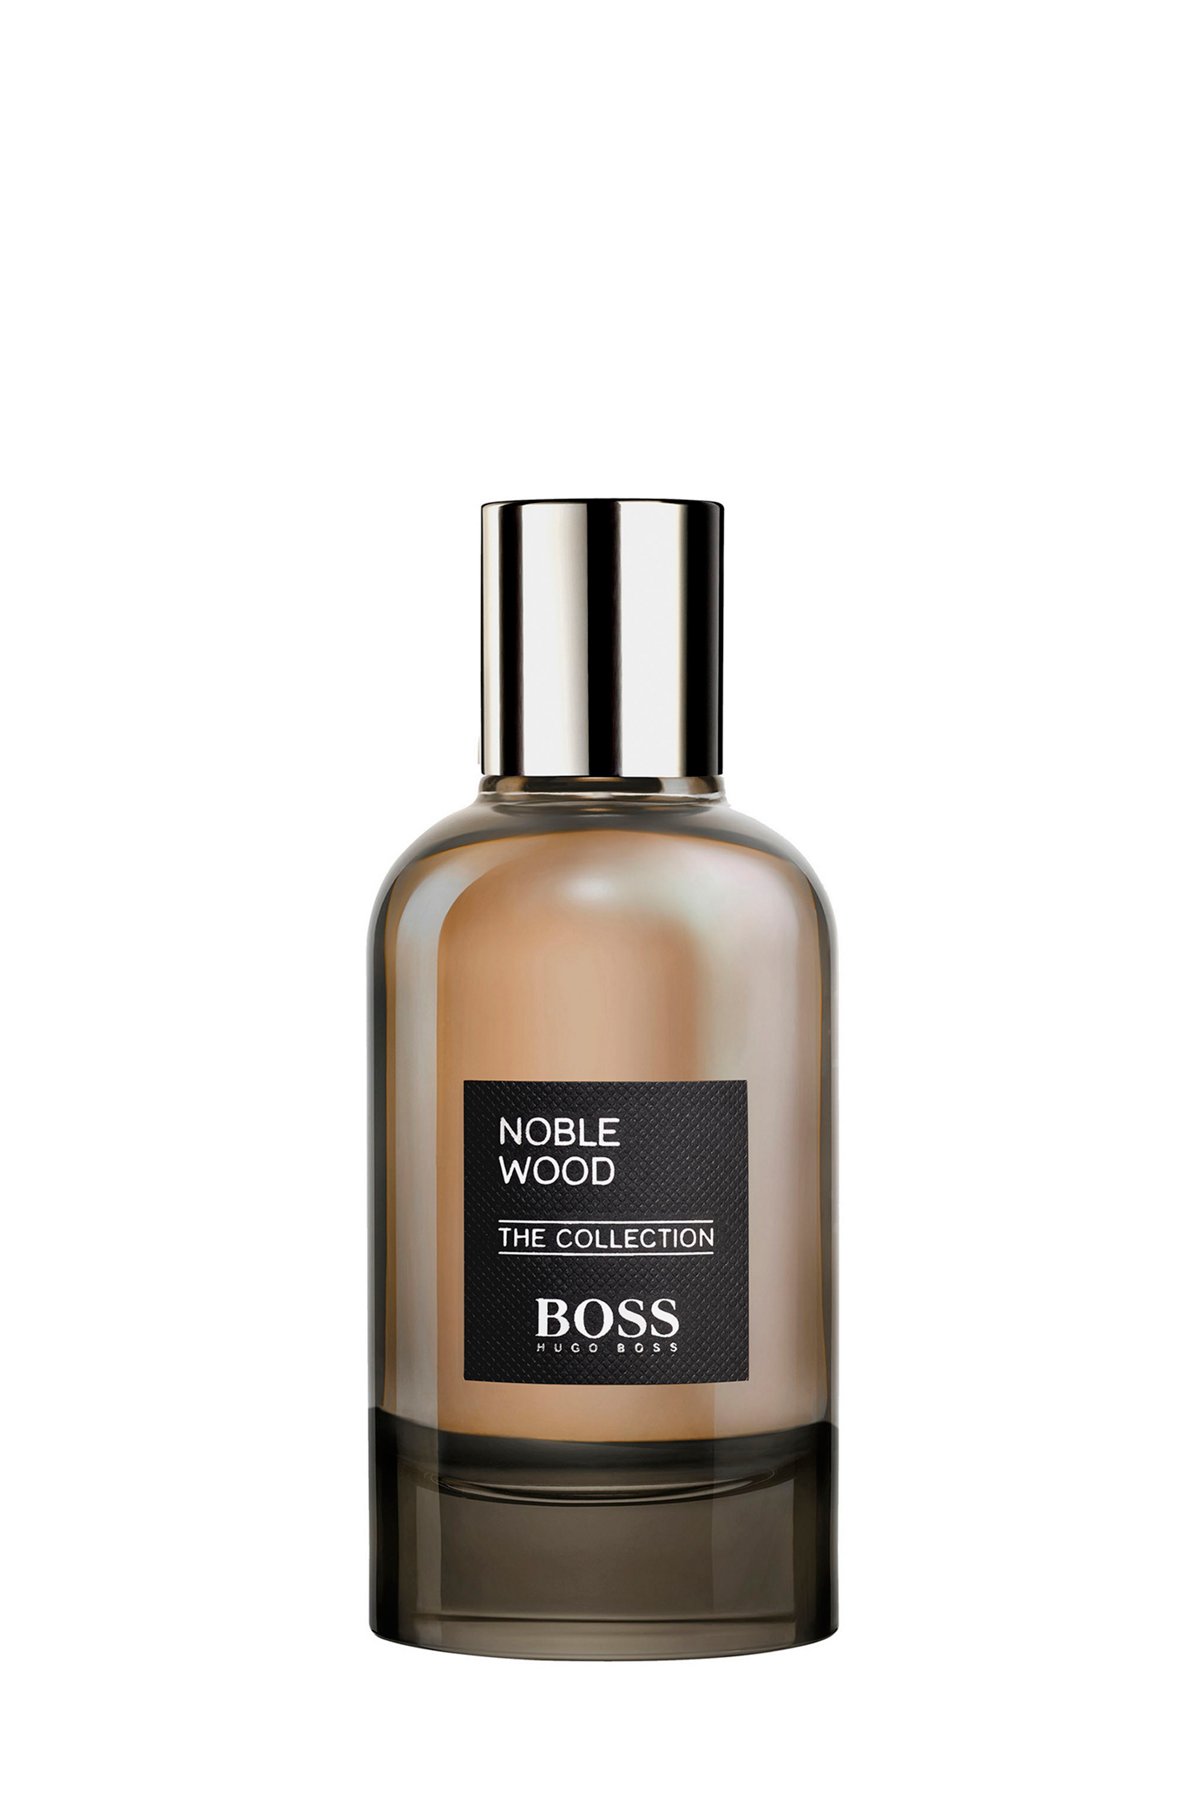 BOSS The Collection Noble Wood eau de parfum 100ml, Assorted-Pre-Pack